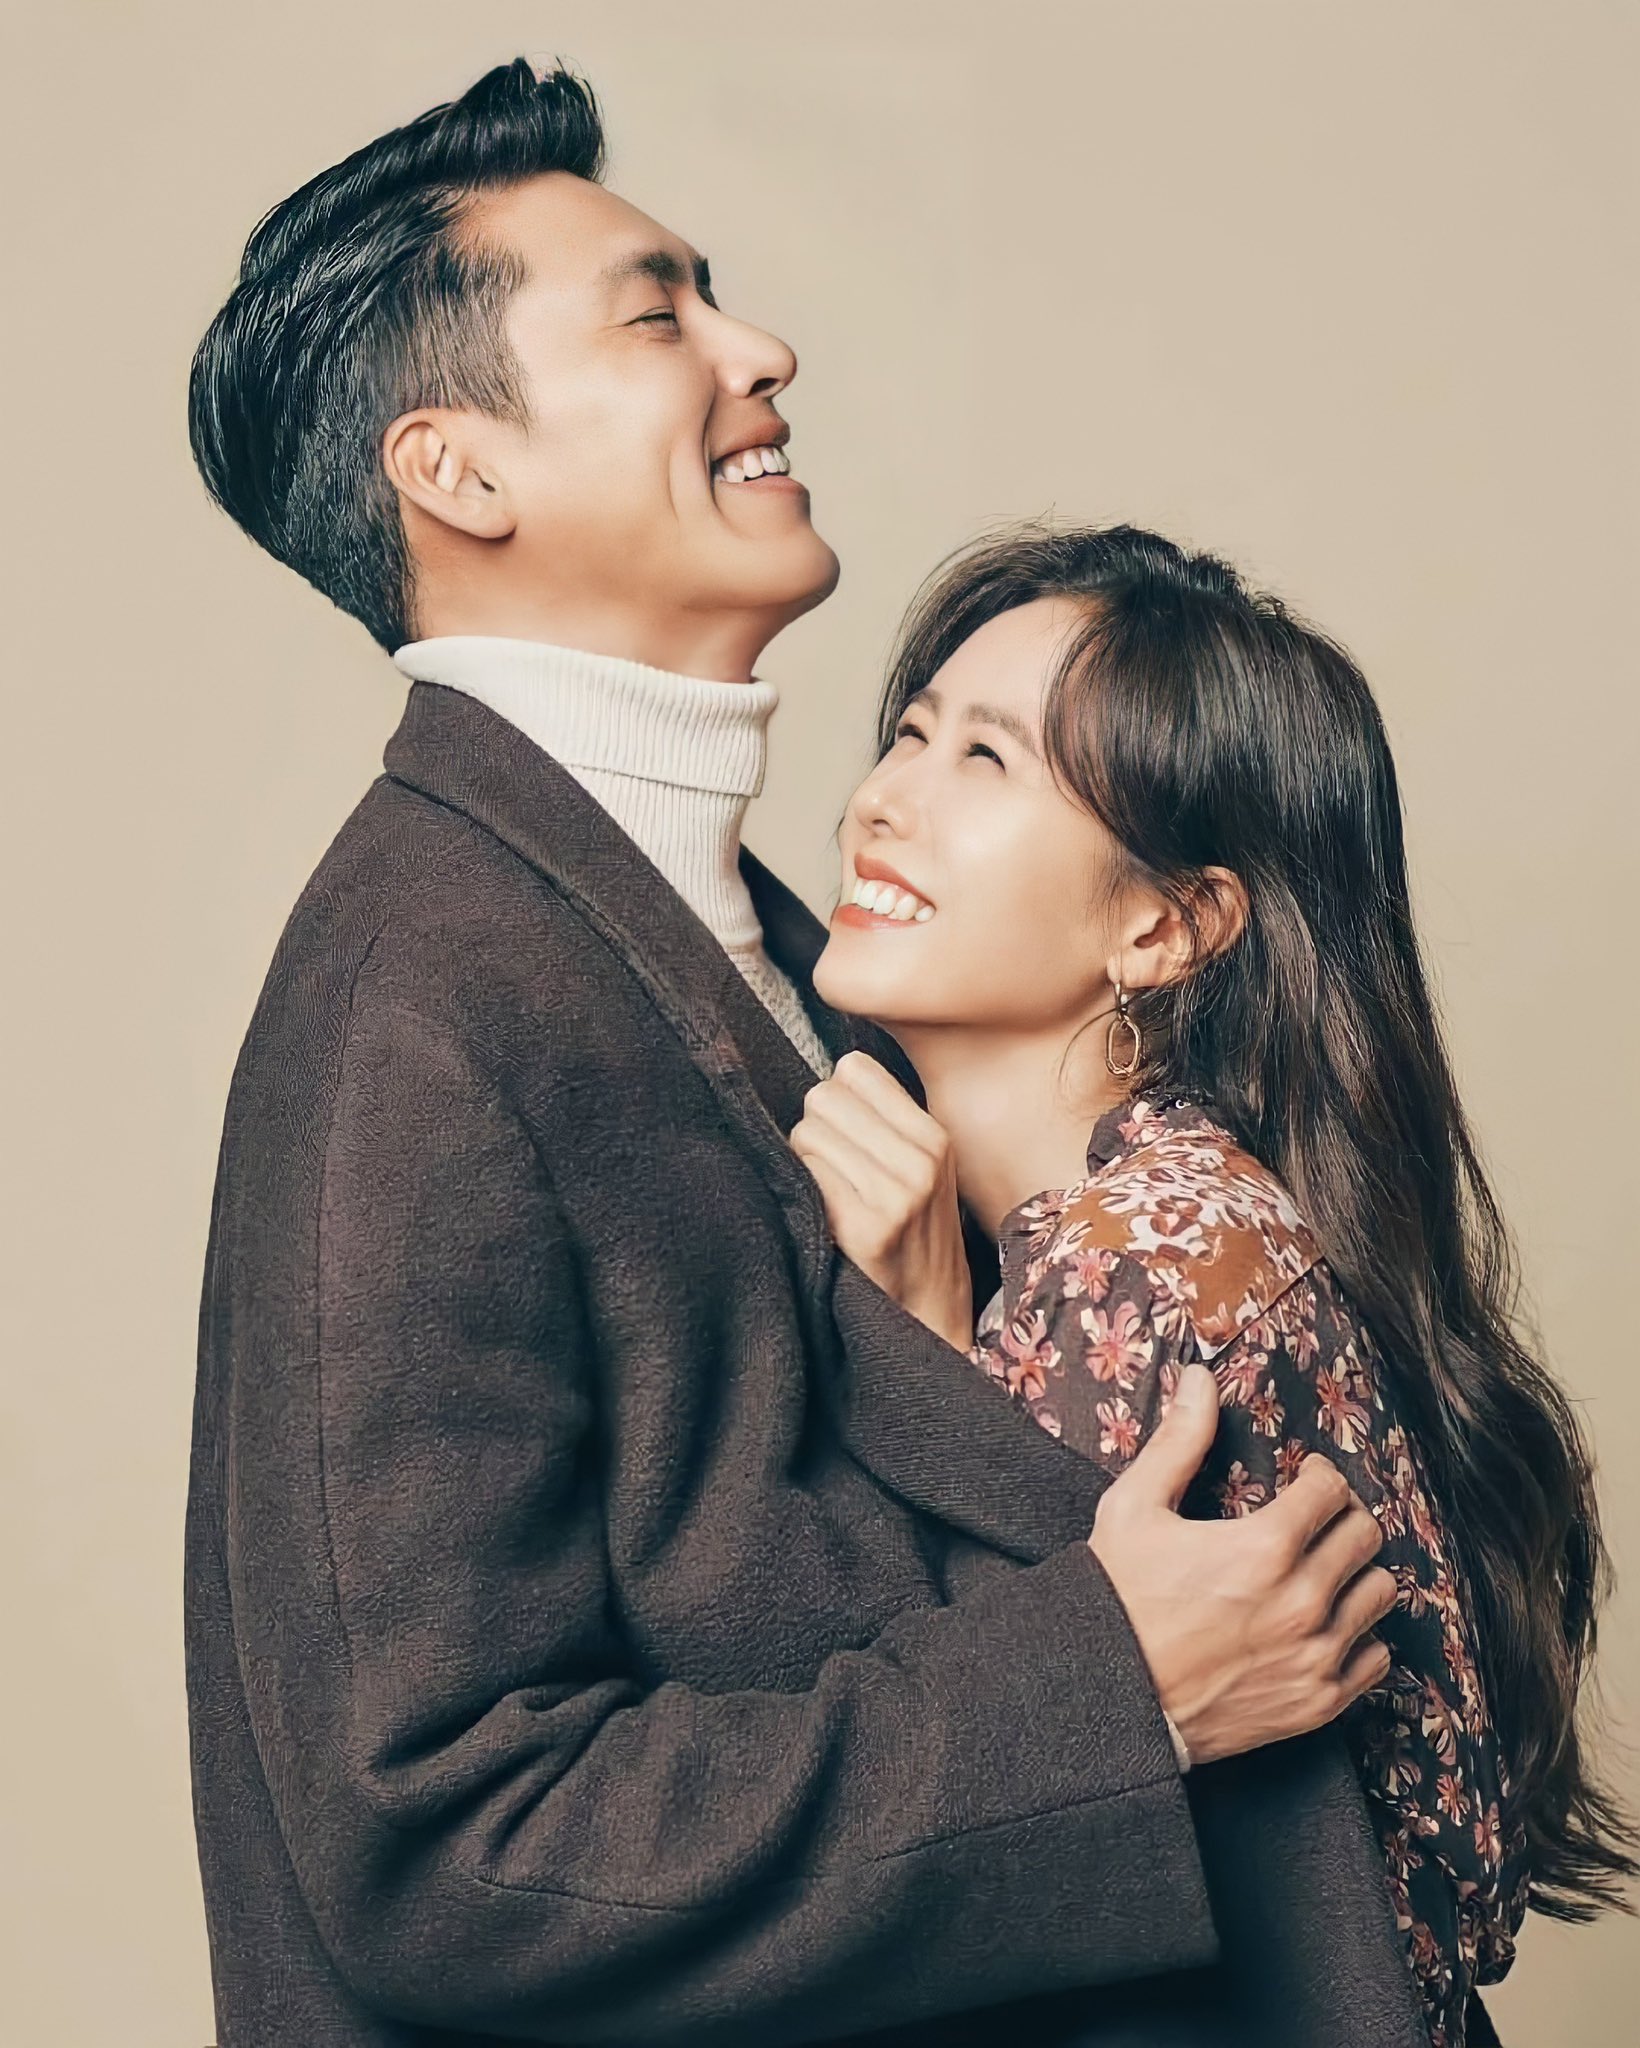 Bóc mẽ tài sản ròng của cặp đôi quyền lực xứ Hàn Hyun Bin và Son Ye-jin - ảnh 7